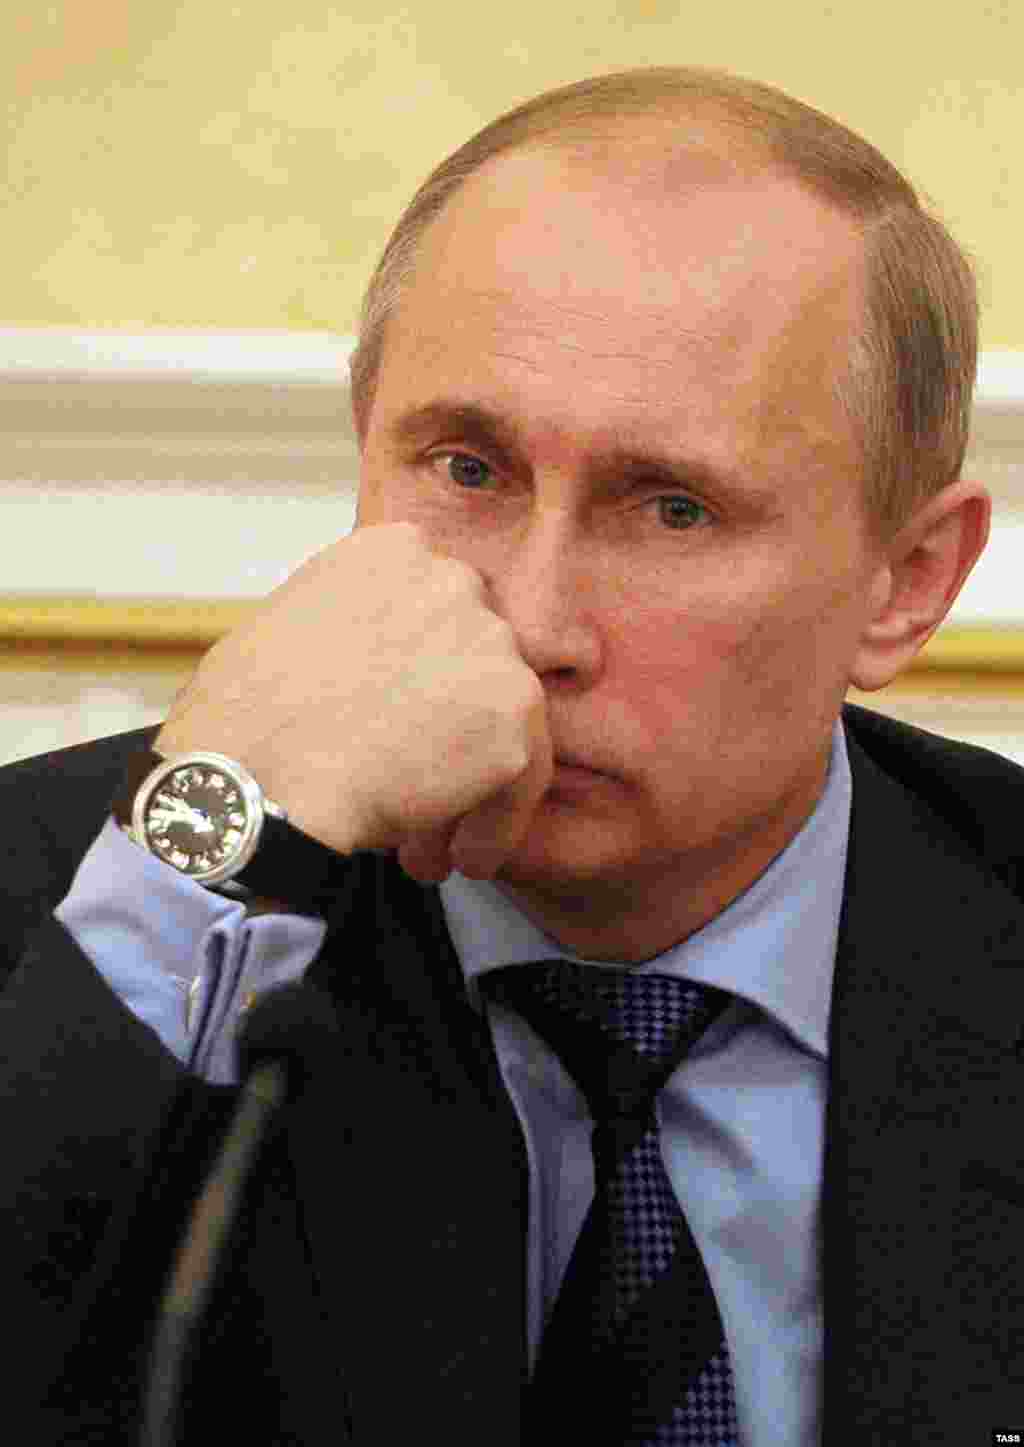 Володимир Путін, іще прем&rsquo;єр-міністр Росії, але вже обраний утретє на президента, на засіданні президії російського уряду у квітні 2012 року